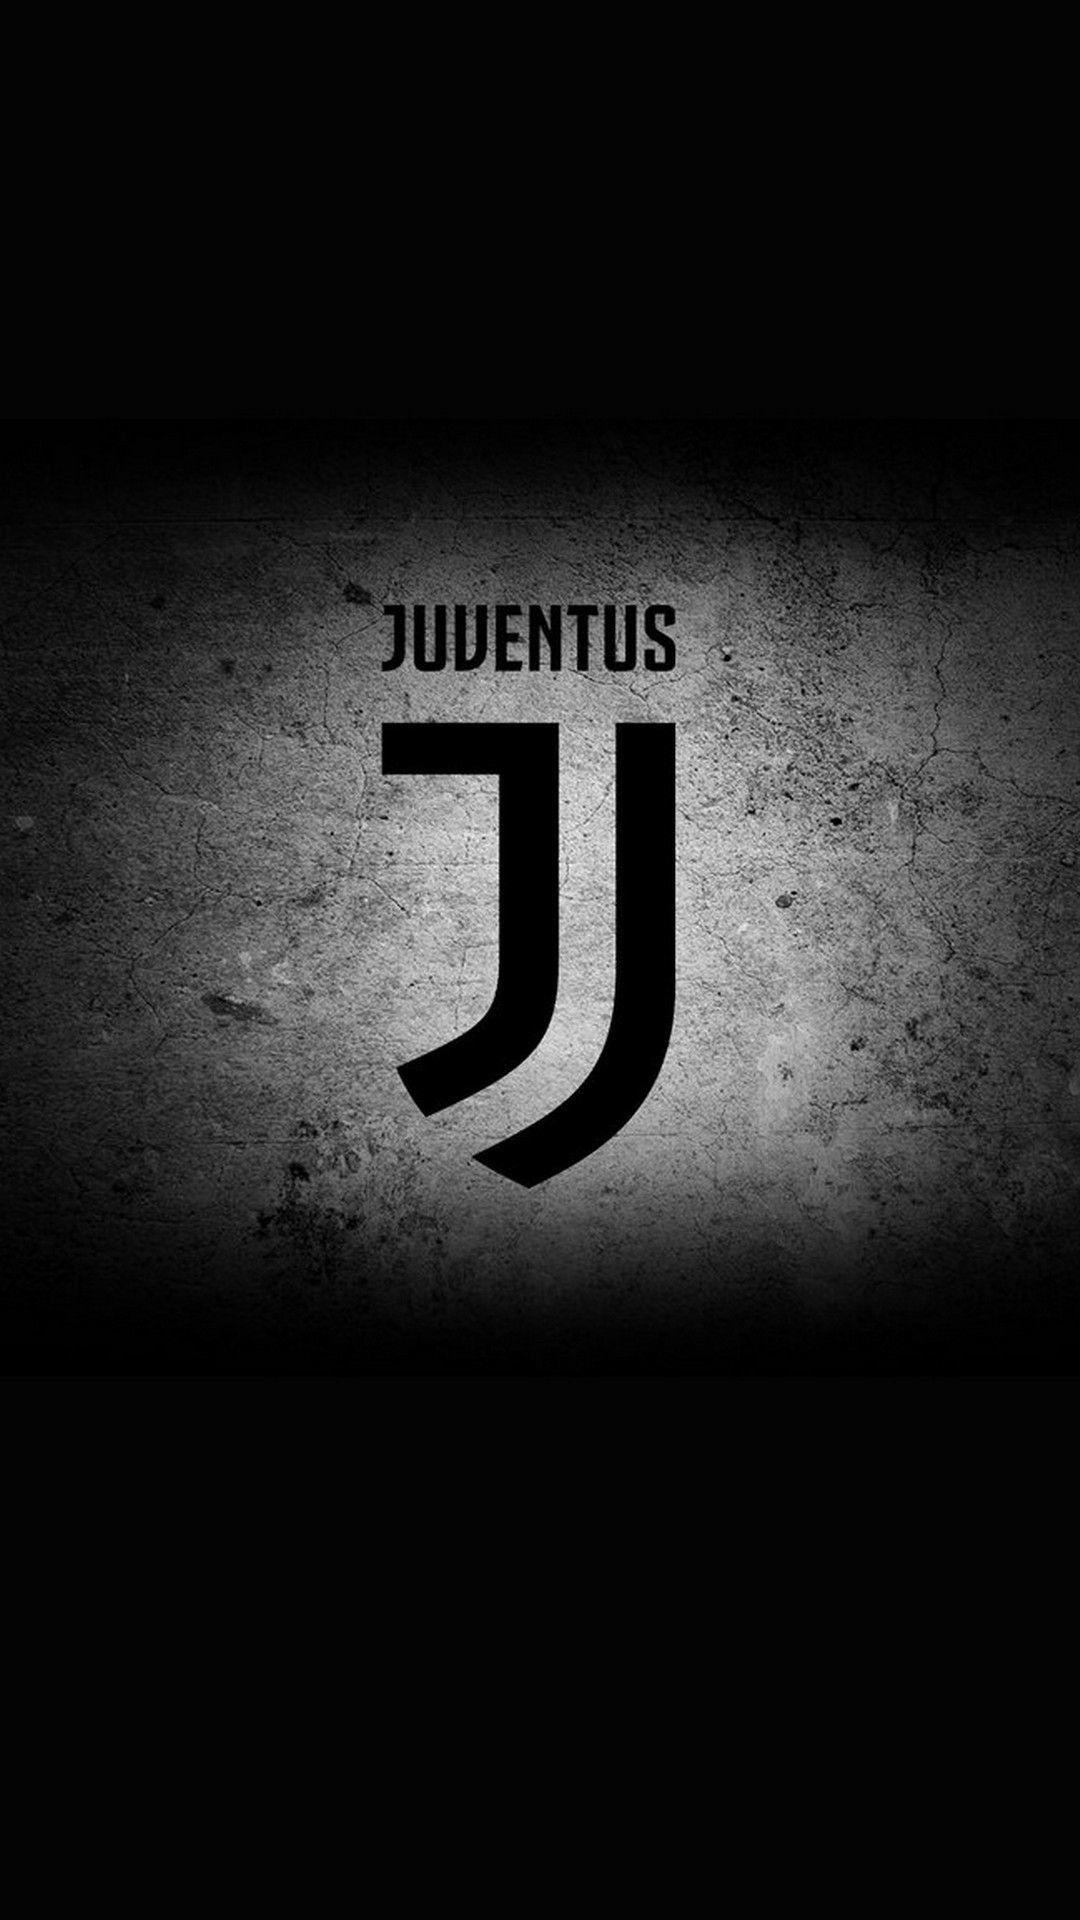 Juventus Logo - Juventus Logo Wallpaper background picture